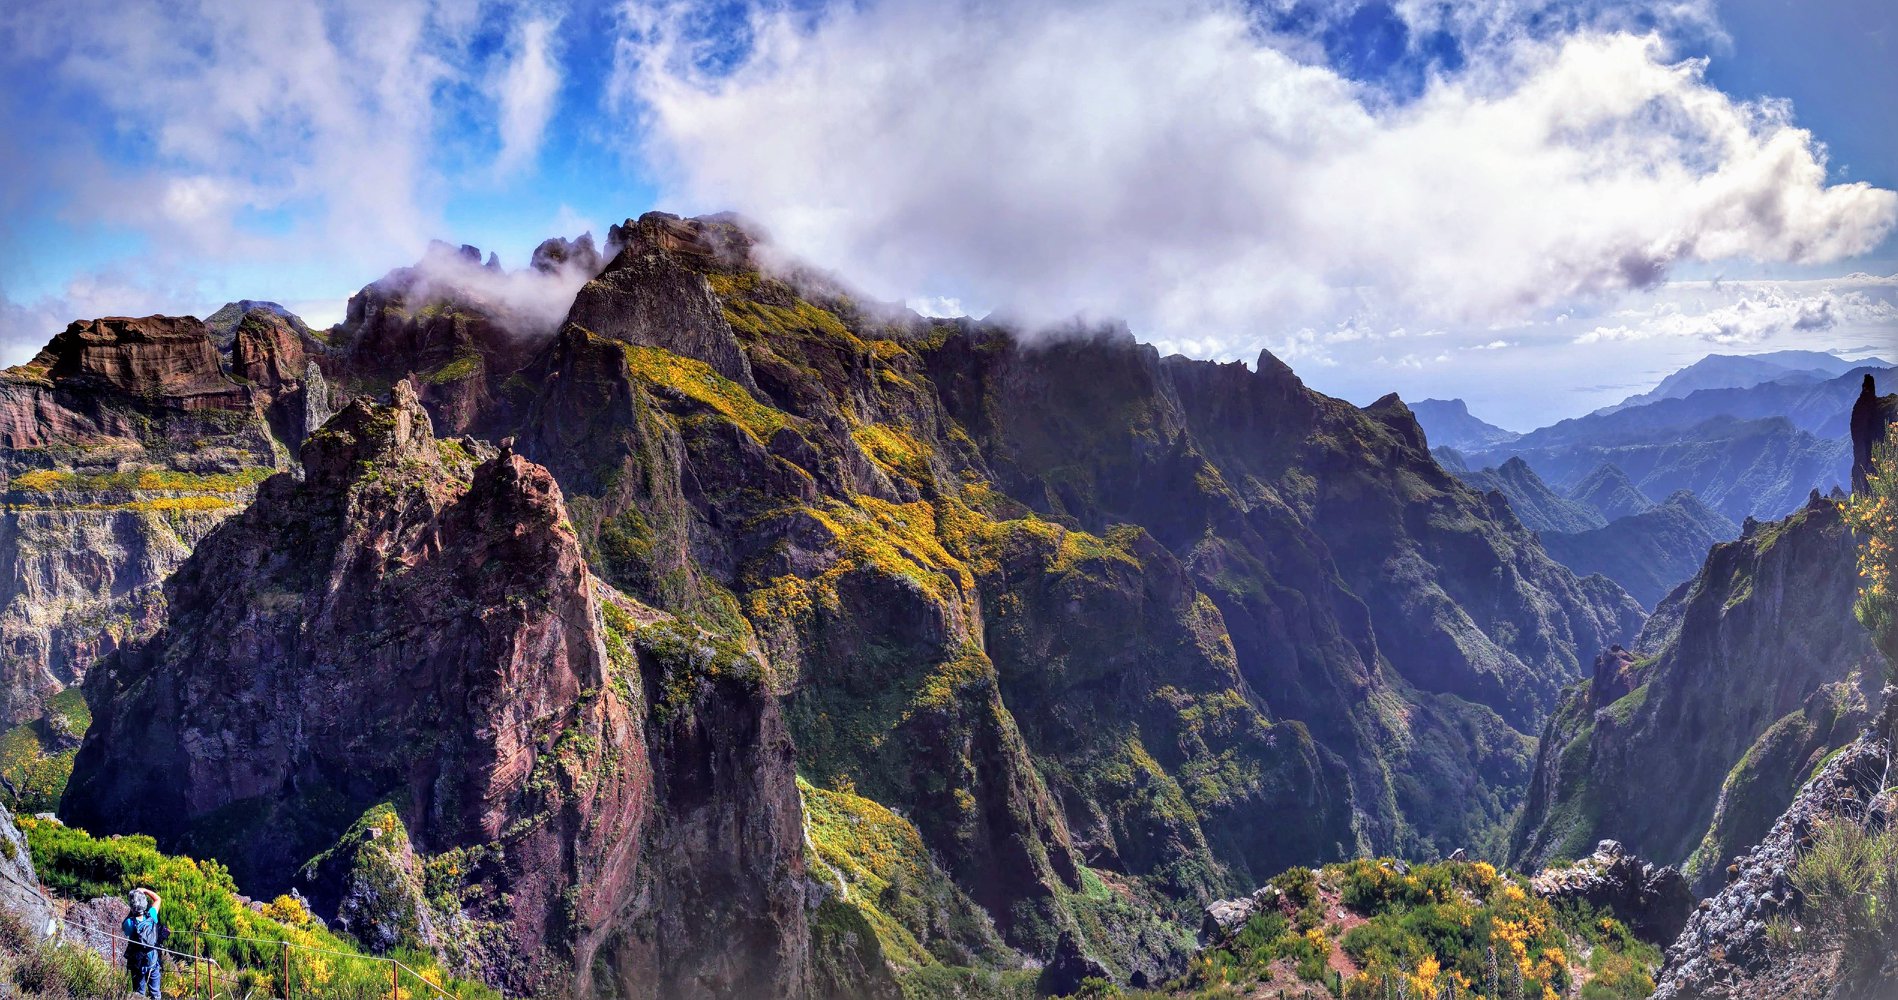 alt" ilha da Madeira"